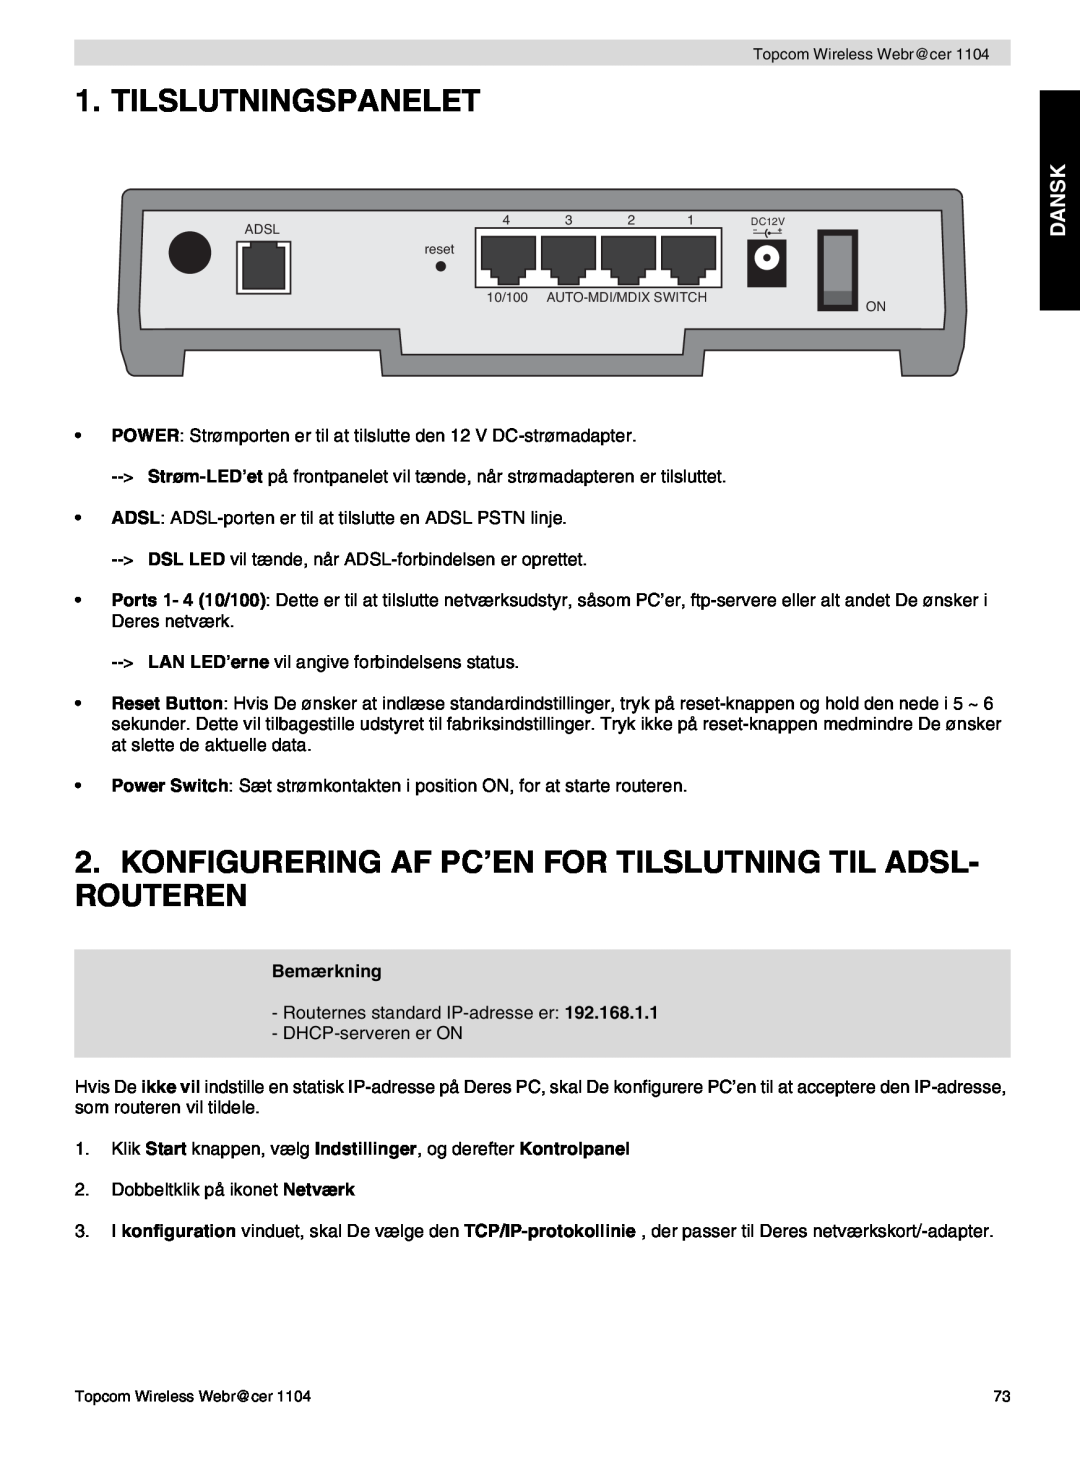 Topcom 1104 manual do utilizador Tilslutningspanelet, Konfigurering Af Pc’En For Tilslutning Til Adsl- Routeren, Dansk 